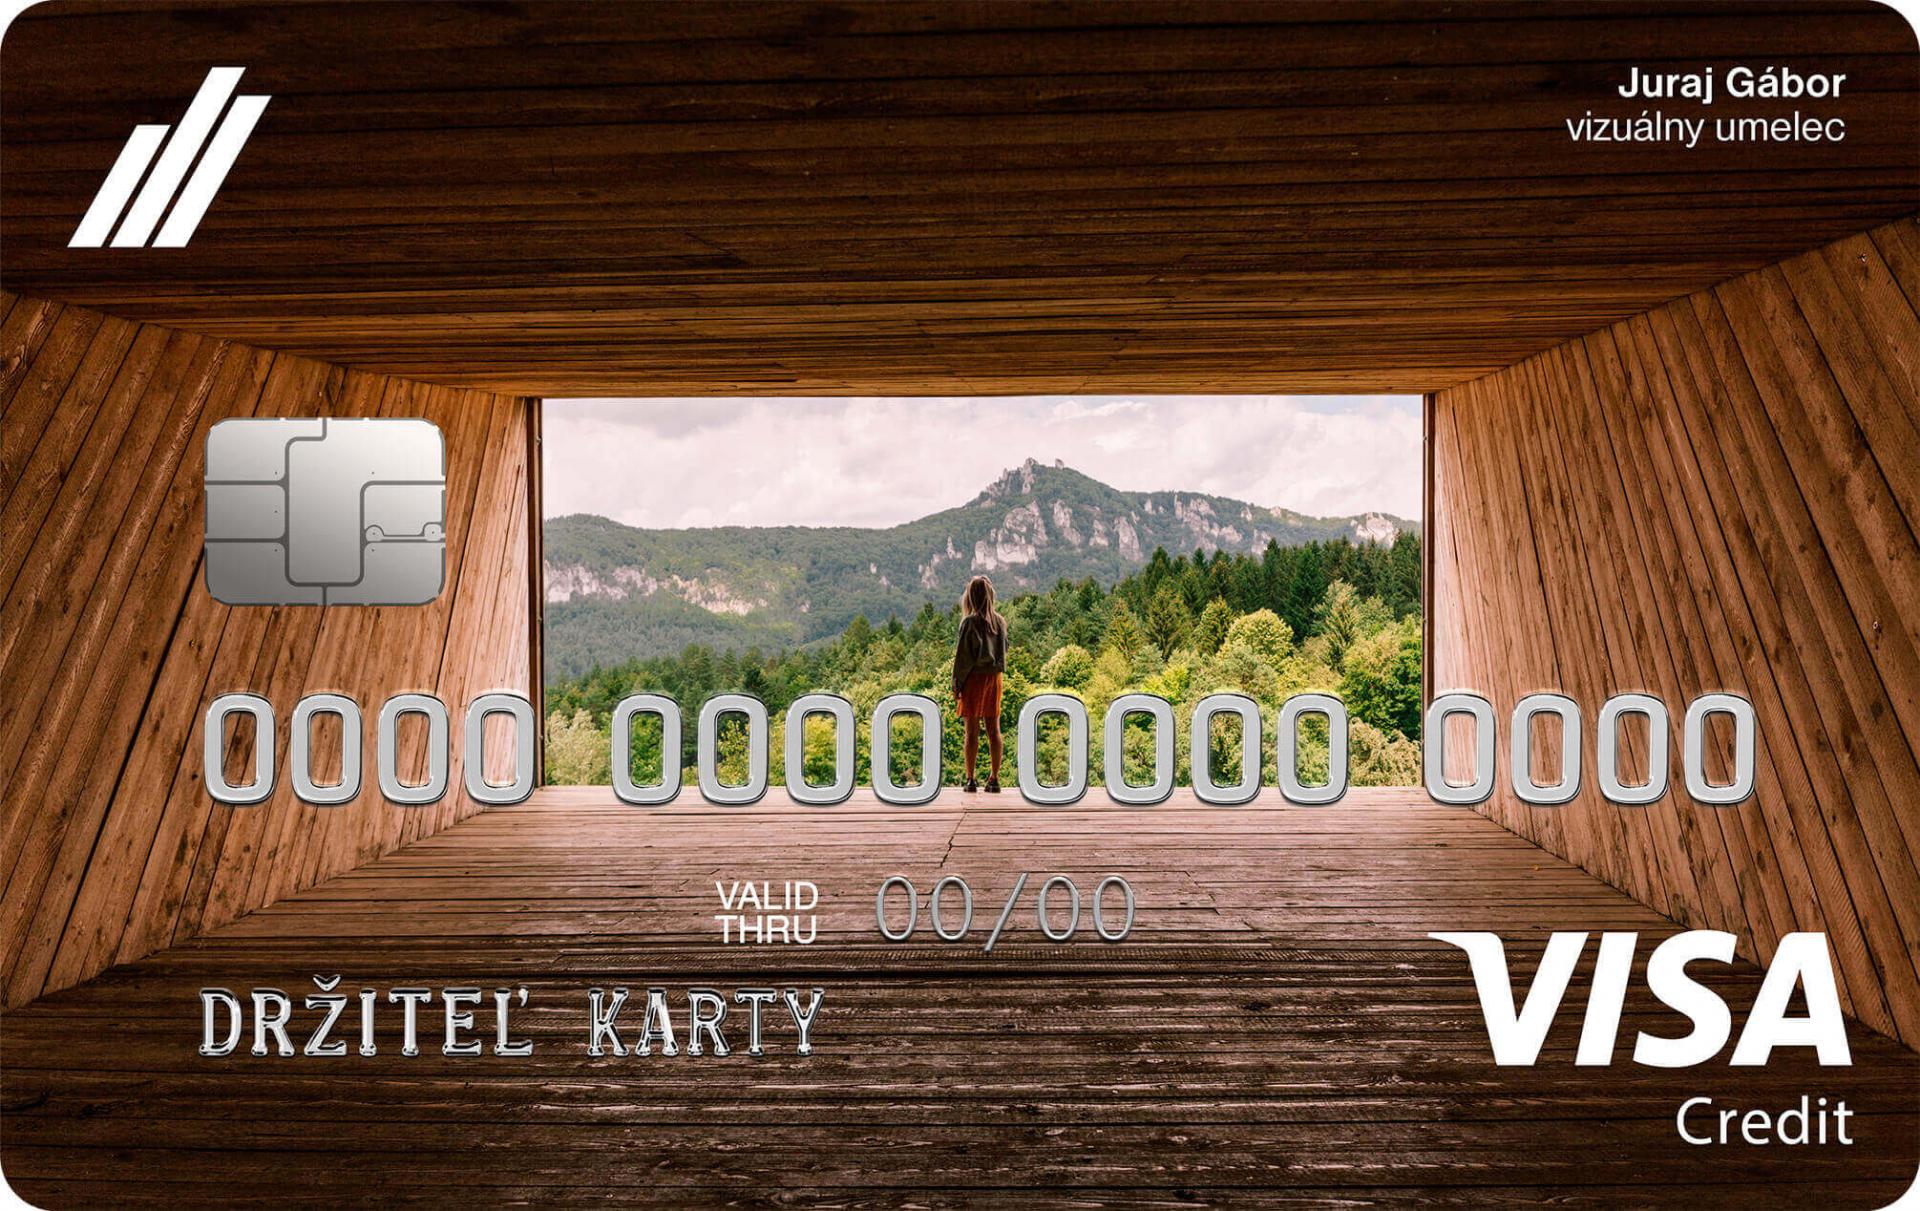 Nová súkromná kreditná karta VISA štandard zobrazuje drevenú sochu Zraková pyramída od Juraja Gábora